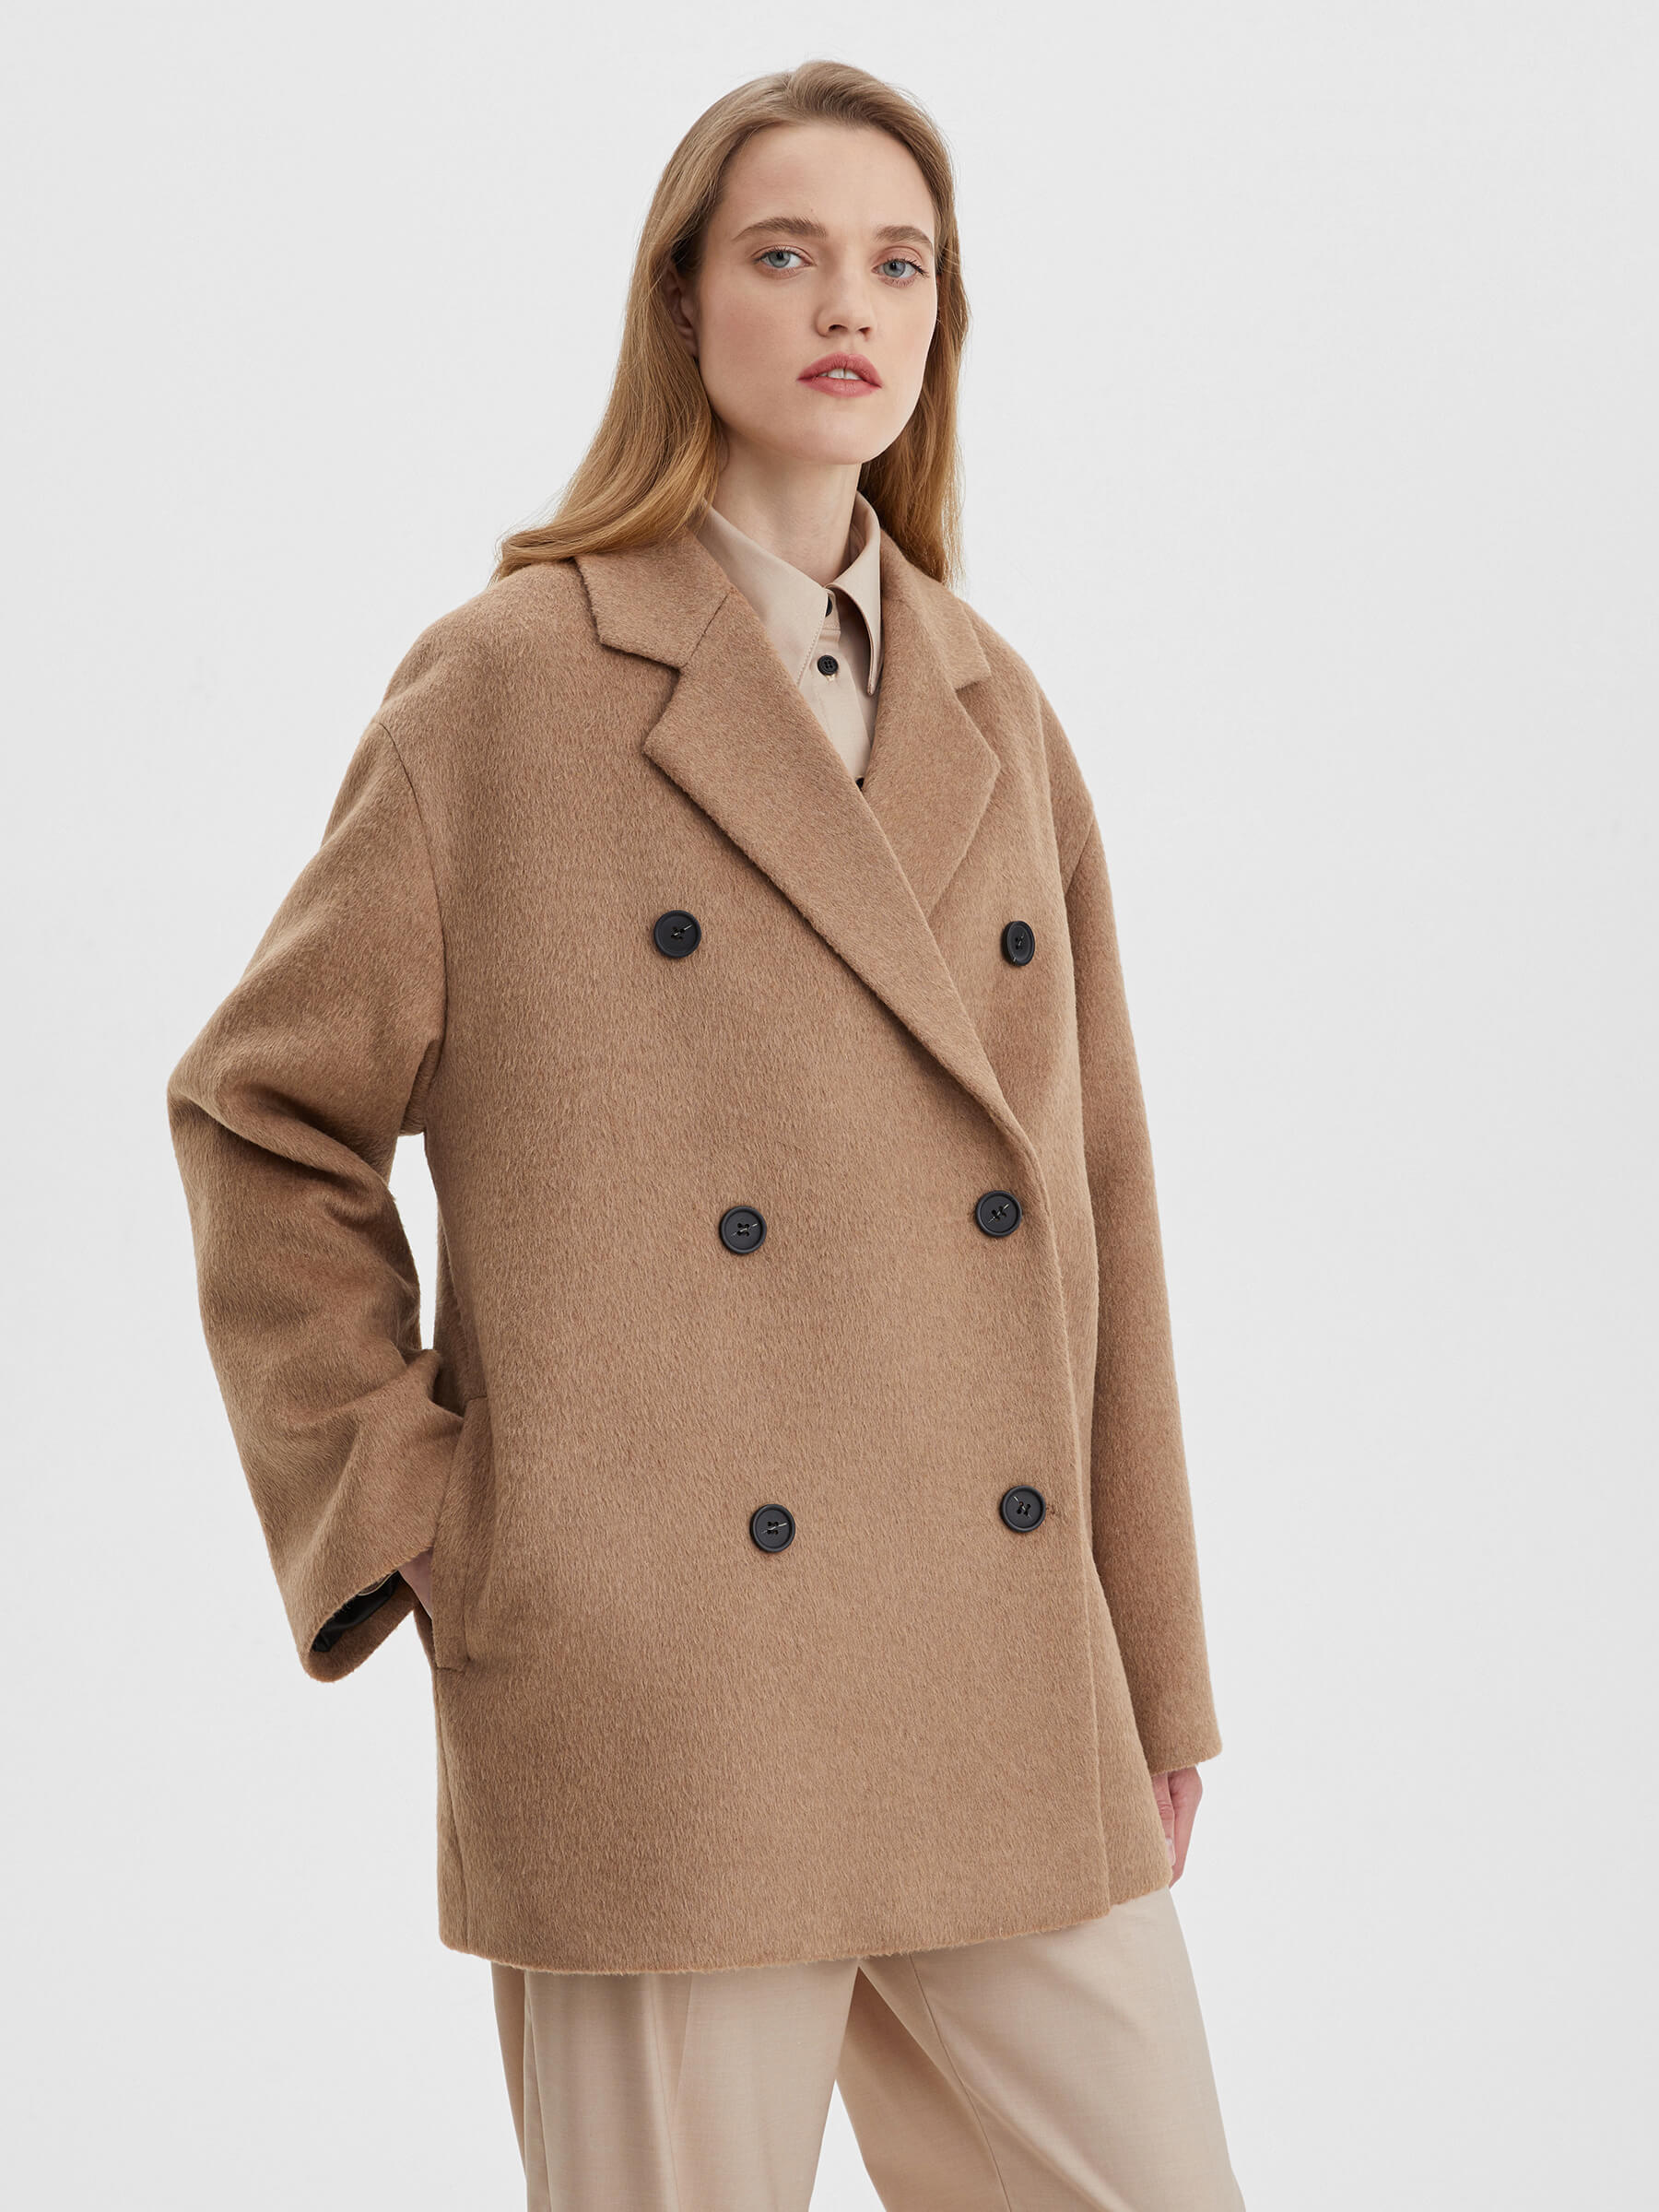 Пальто женское двубортное укороченное, цвет – коричневый пальто рубашка женское на подкладе цвет – кэмел